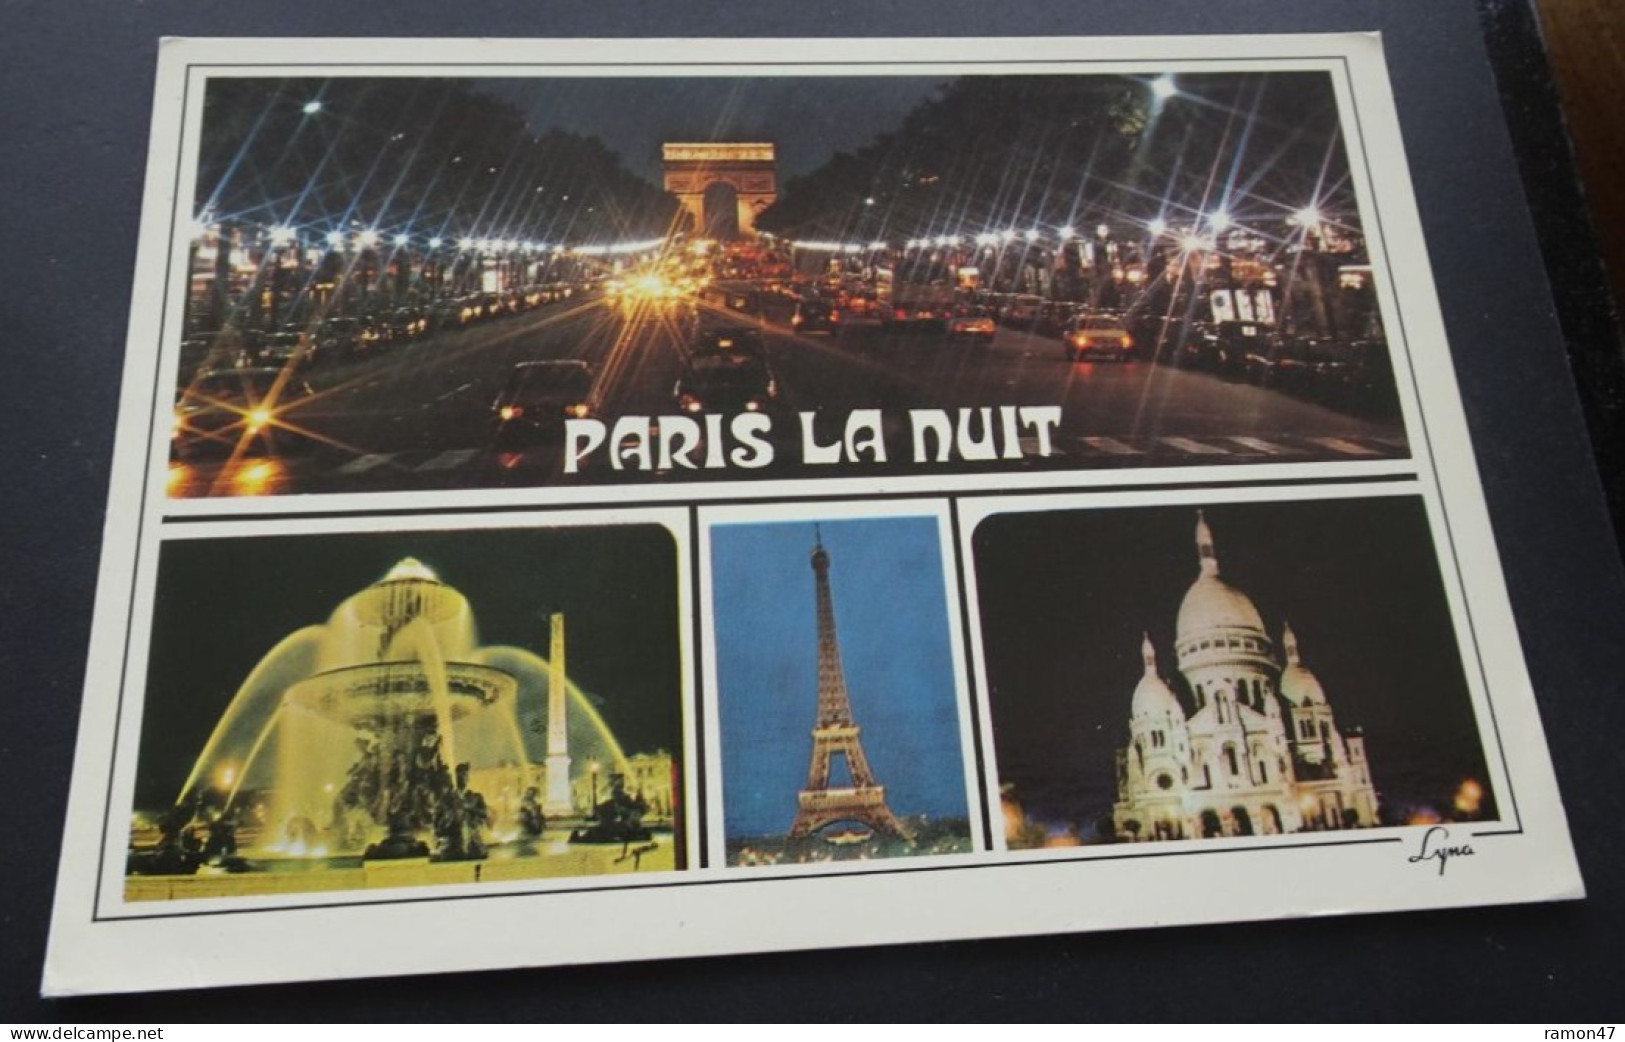 Paris, La Nuit - Abeille-Cartes, Editions "LYNA-PARIS", Paris - París La Noche